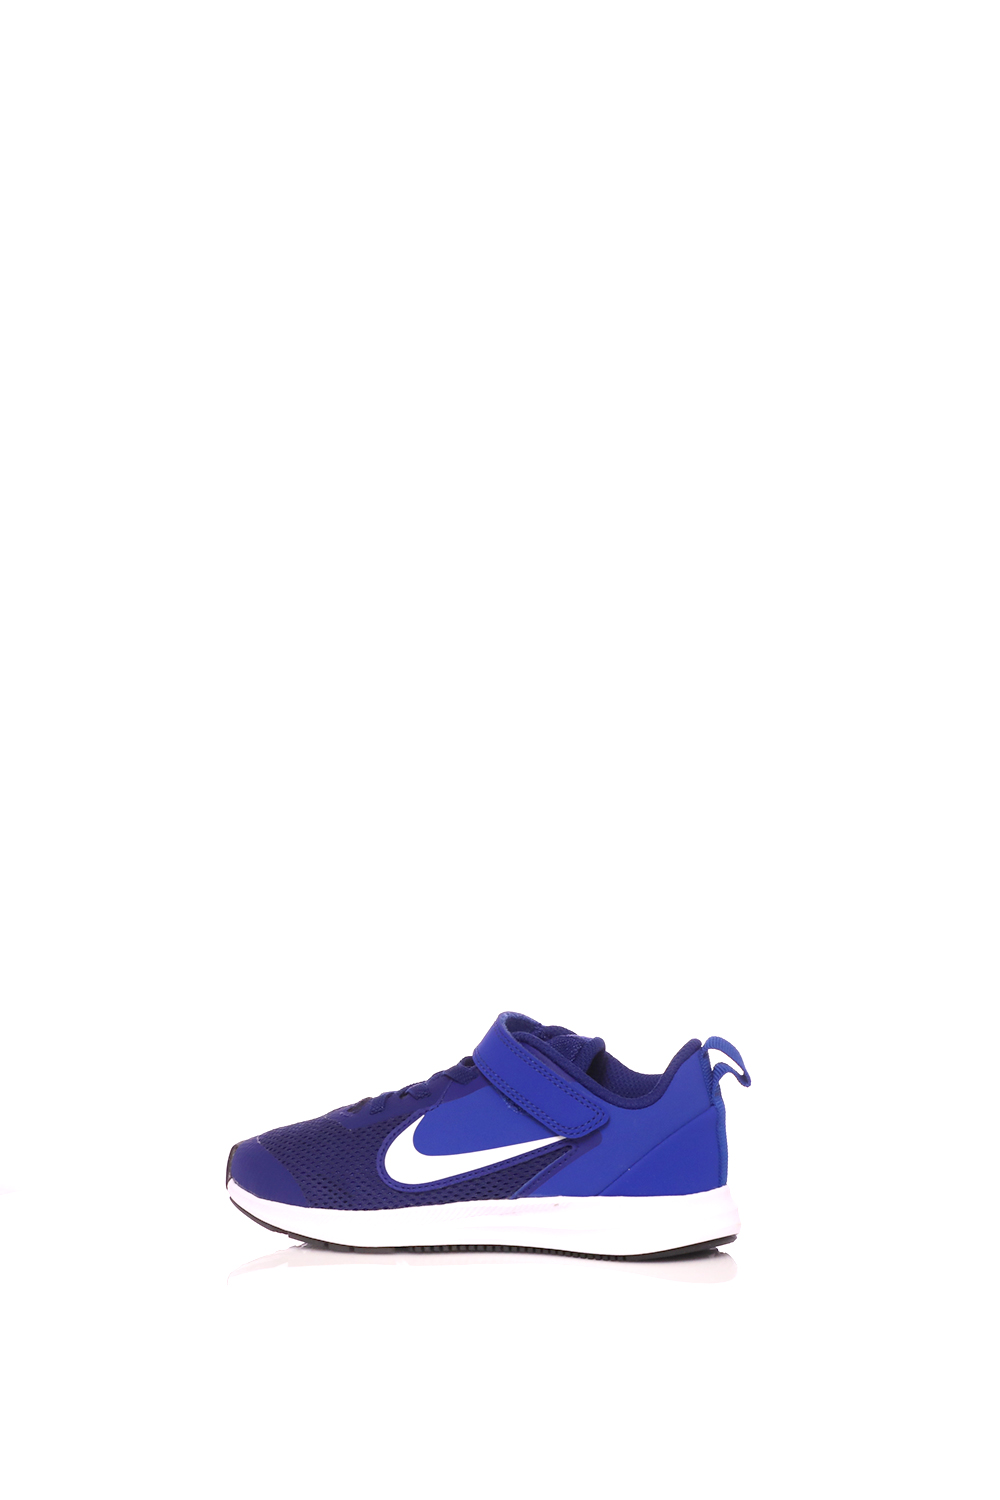 Παιδικά/Boys/Παπούτσια/Αθλητικά NIKE - Παιδικά παπούτσια running NIKE Downshifter 9 (PSV) μπλε-λευκά